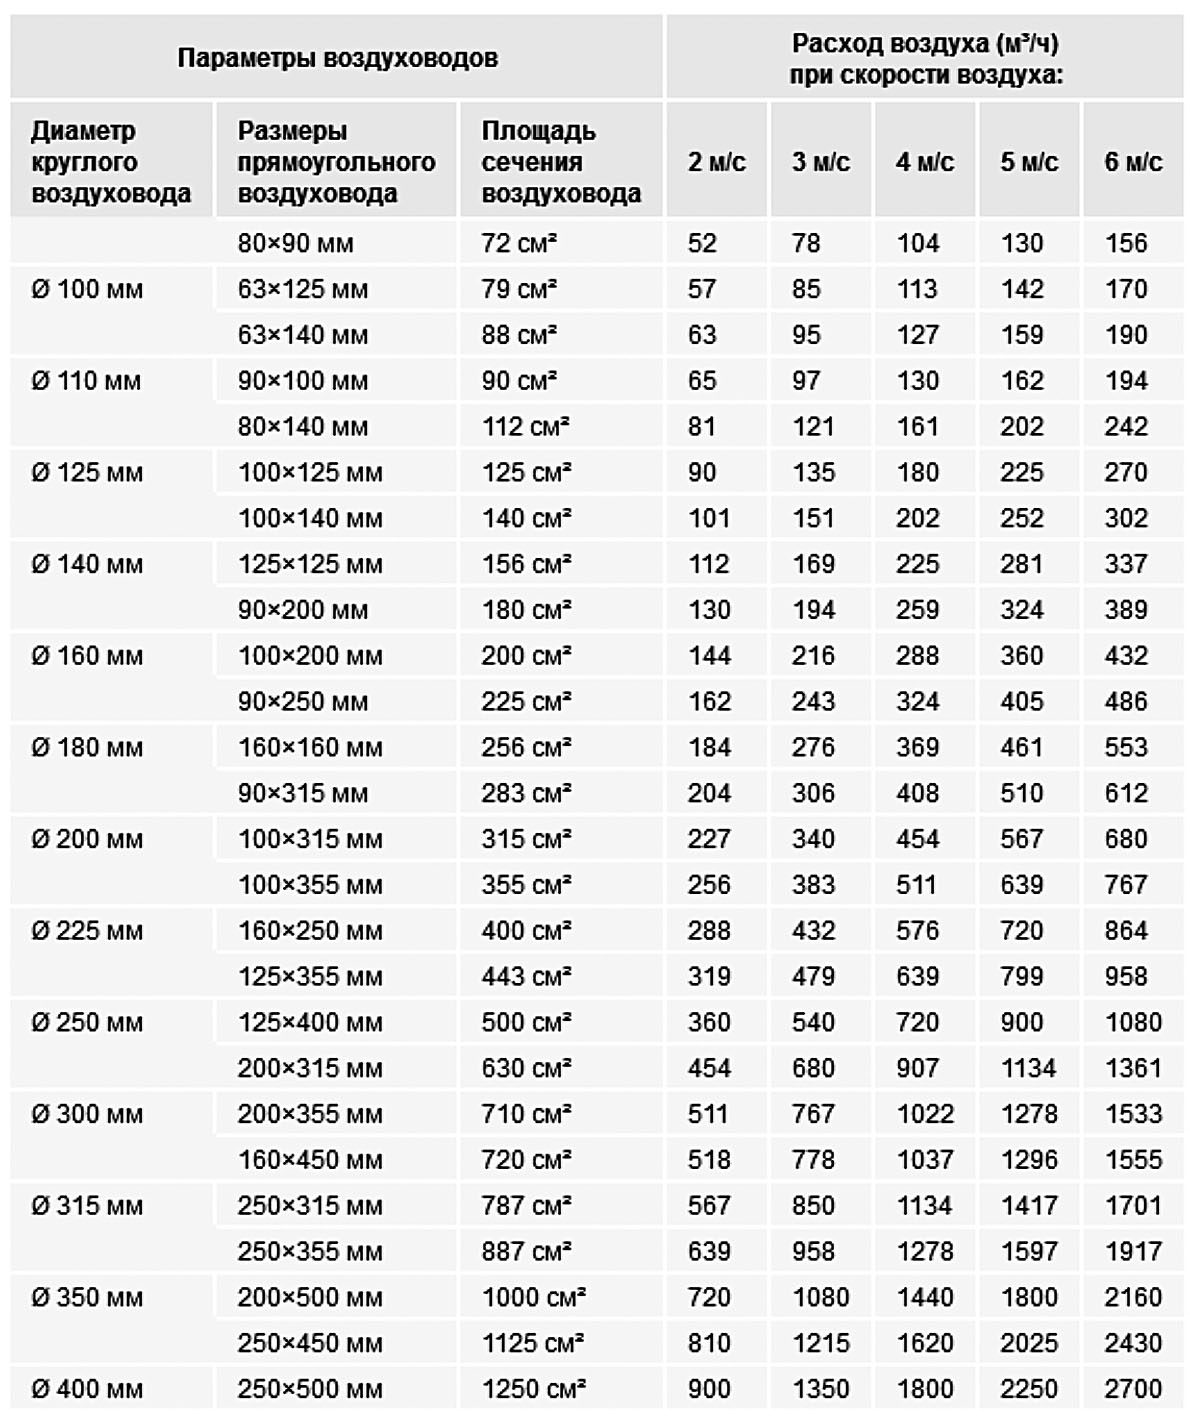 Таблица расчета скорости воздуха в воздуховоде